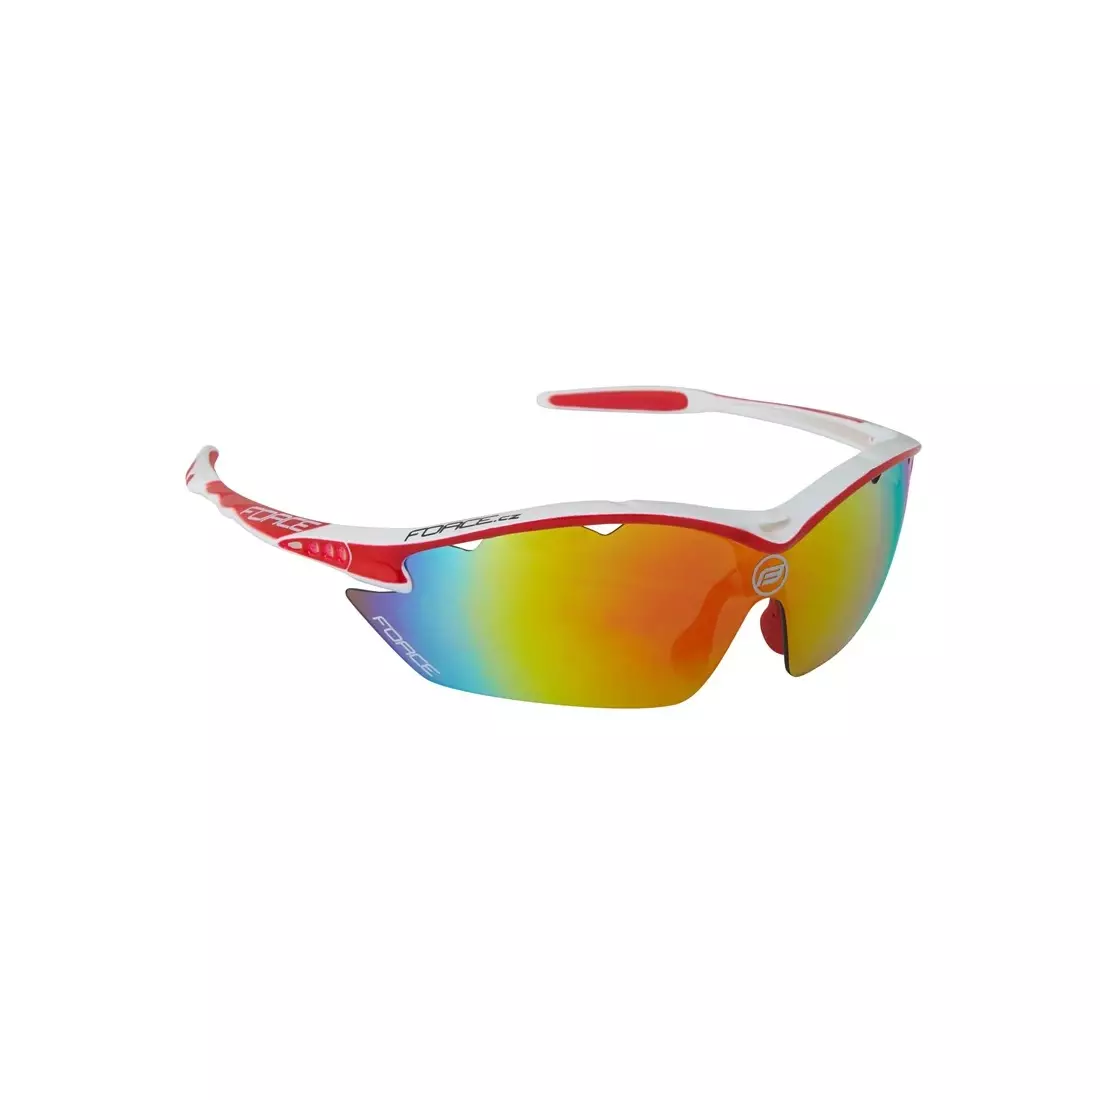 FORCE RON Cyklistické/športové okuliare biele a červené 91011 vymeniteľné sklá